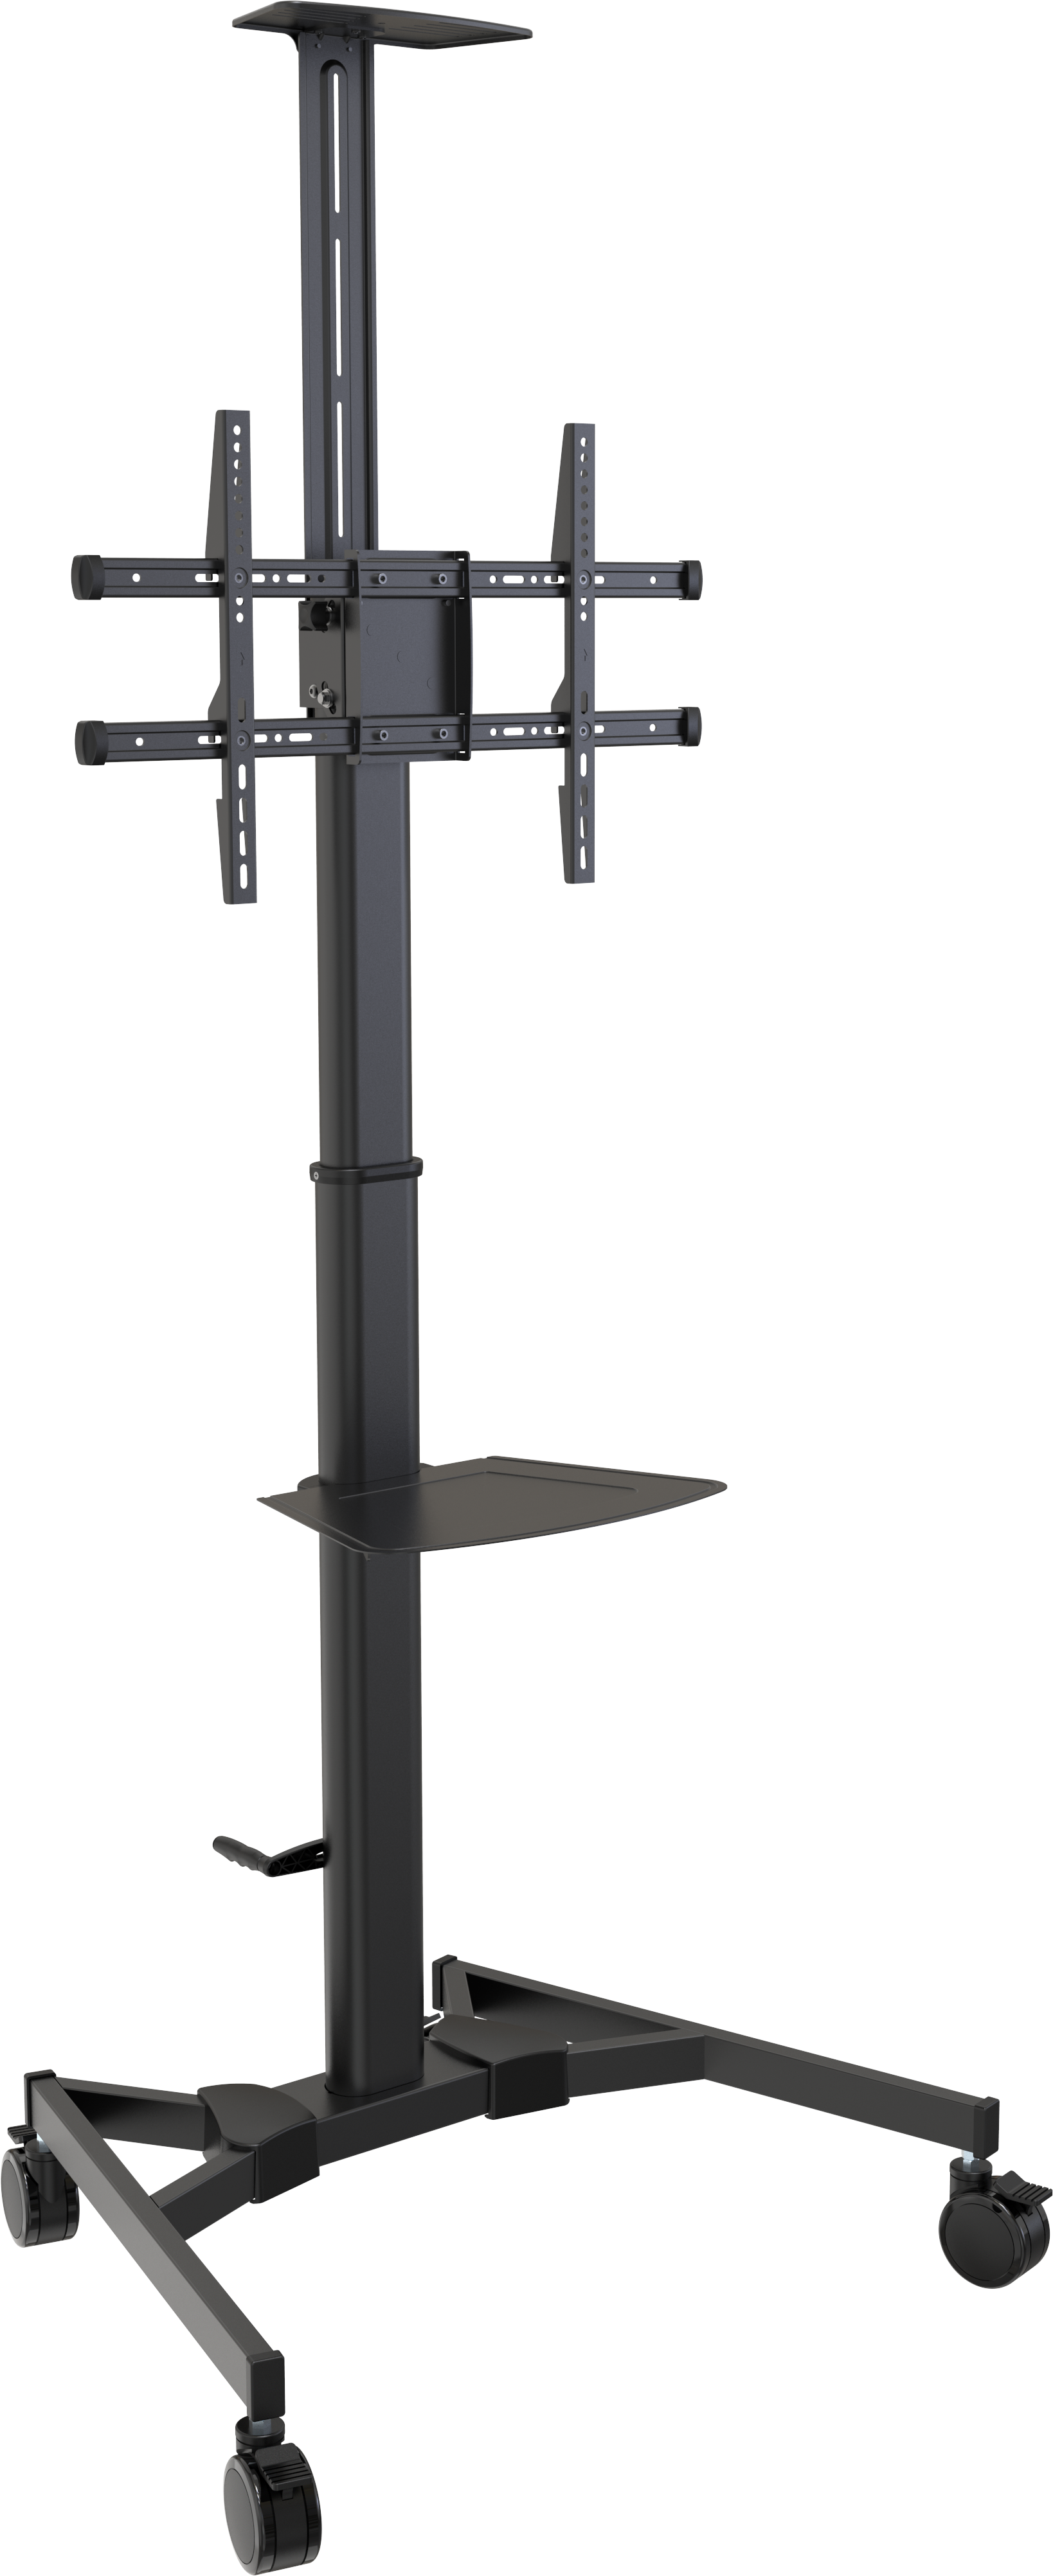 An image showing Carrello per schermi regolabile in altezza con portata di 45 kg